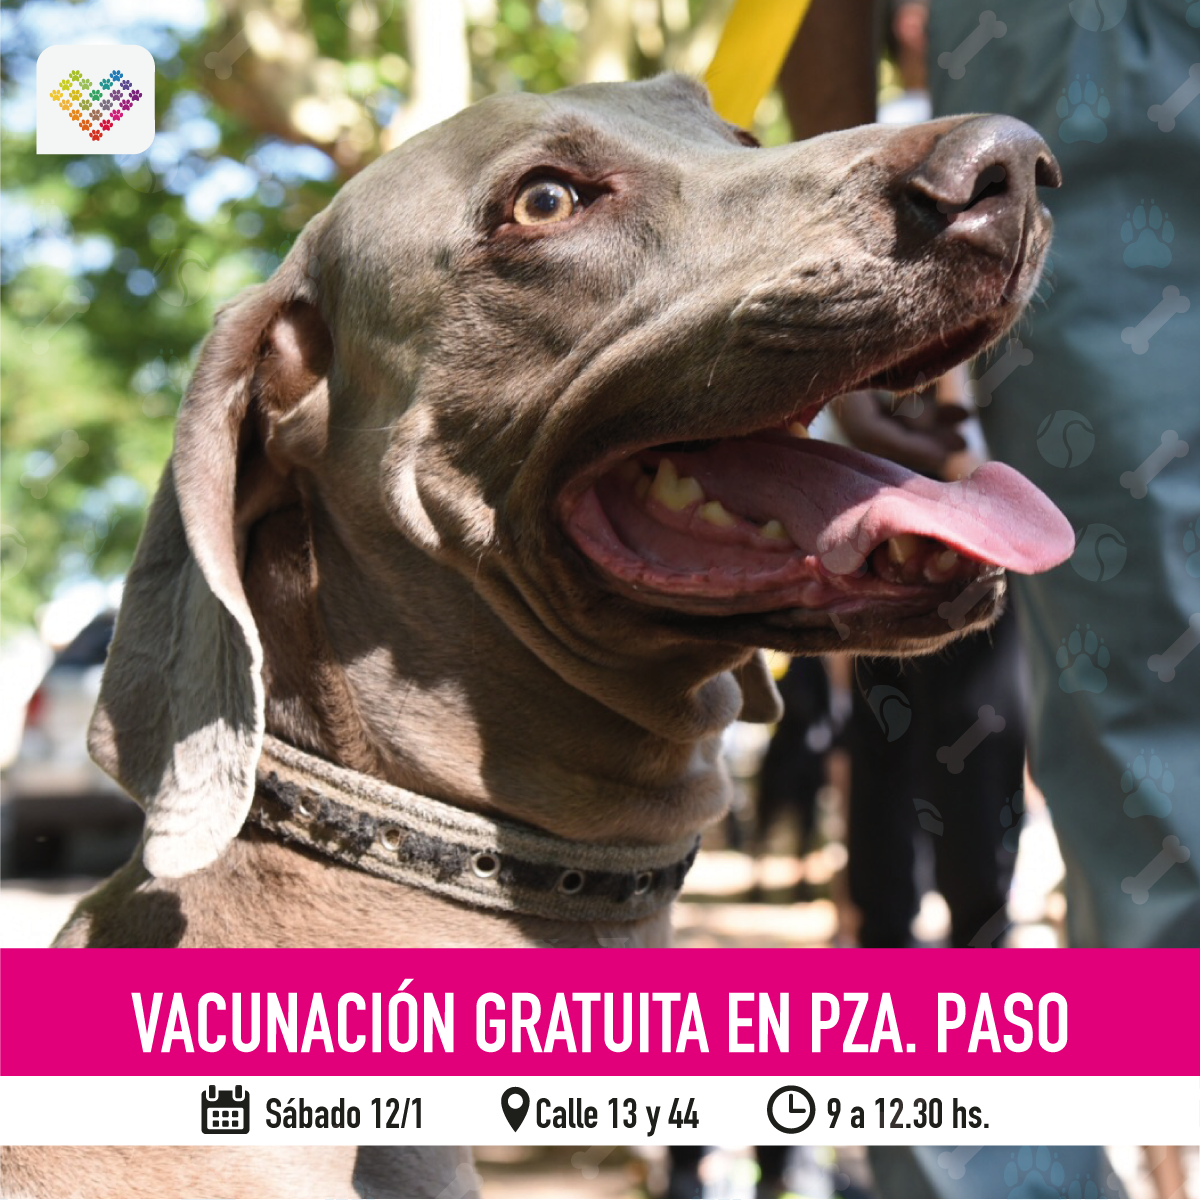  El consultorio veterinario móvil ofrecerá vacunación, desparasitación y atención primaria en Plaza Paso